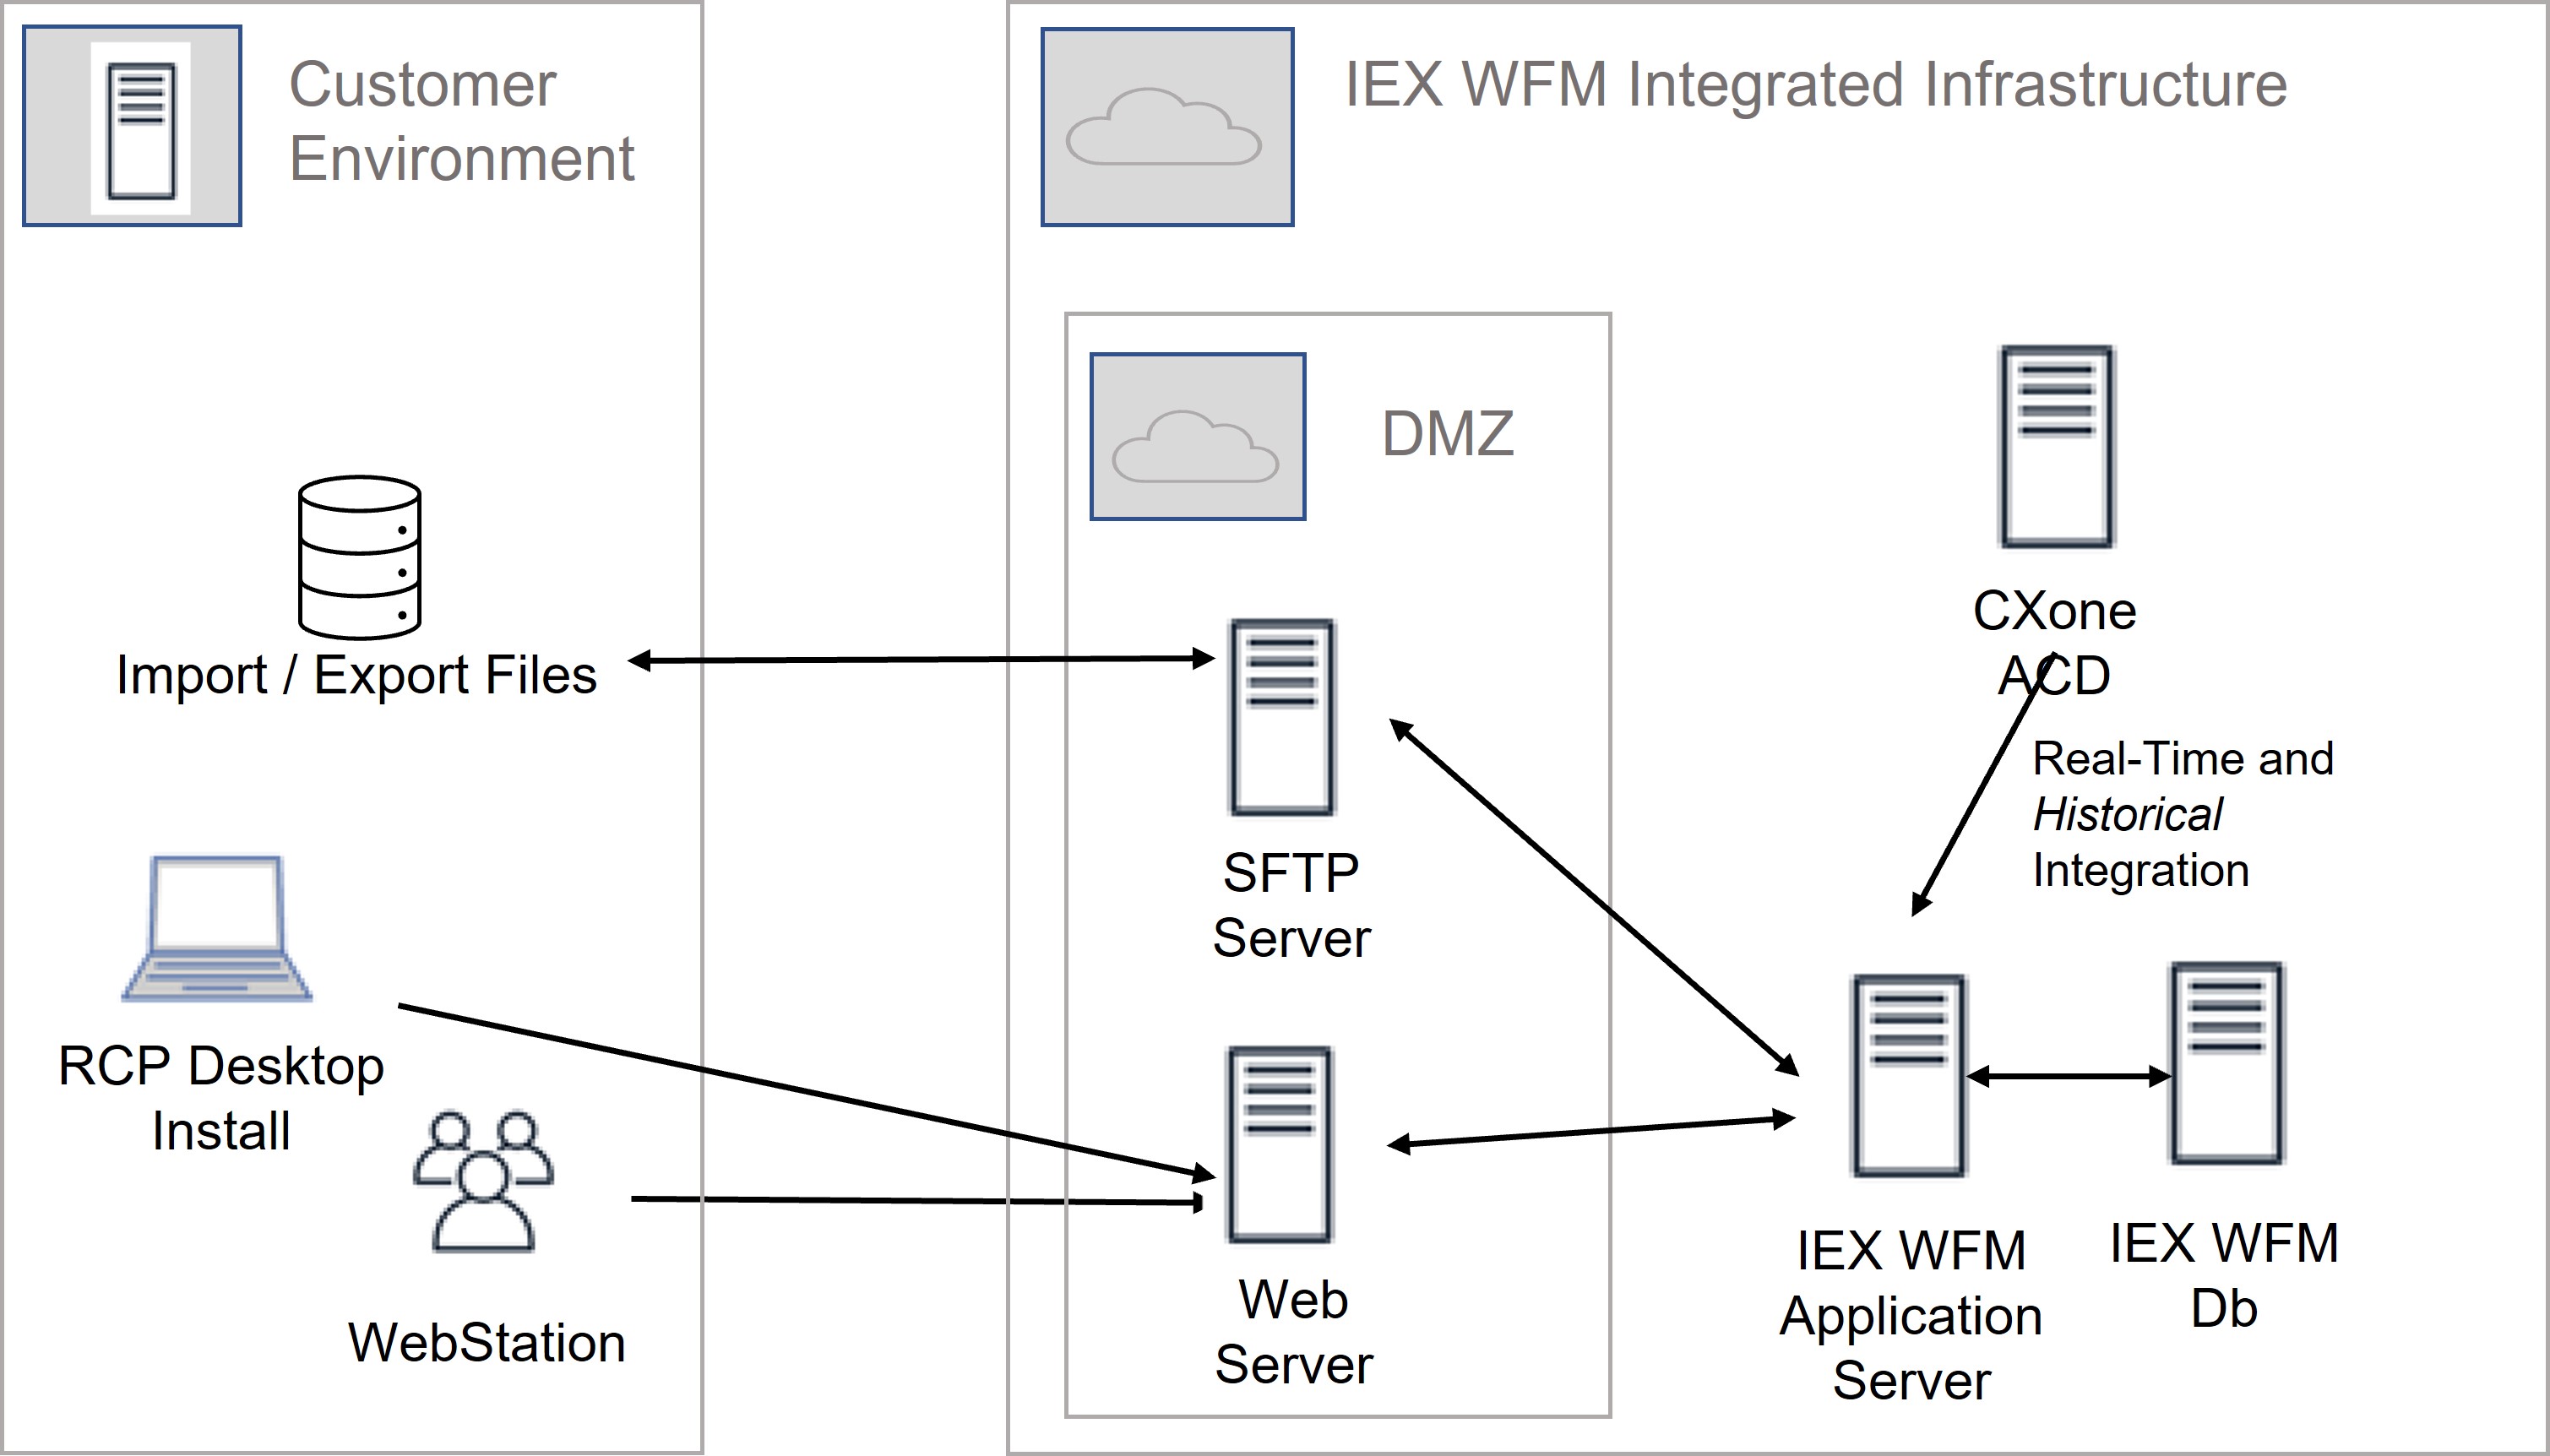 Diagrama de red IEX WFM Integrated